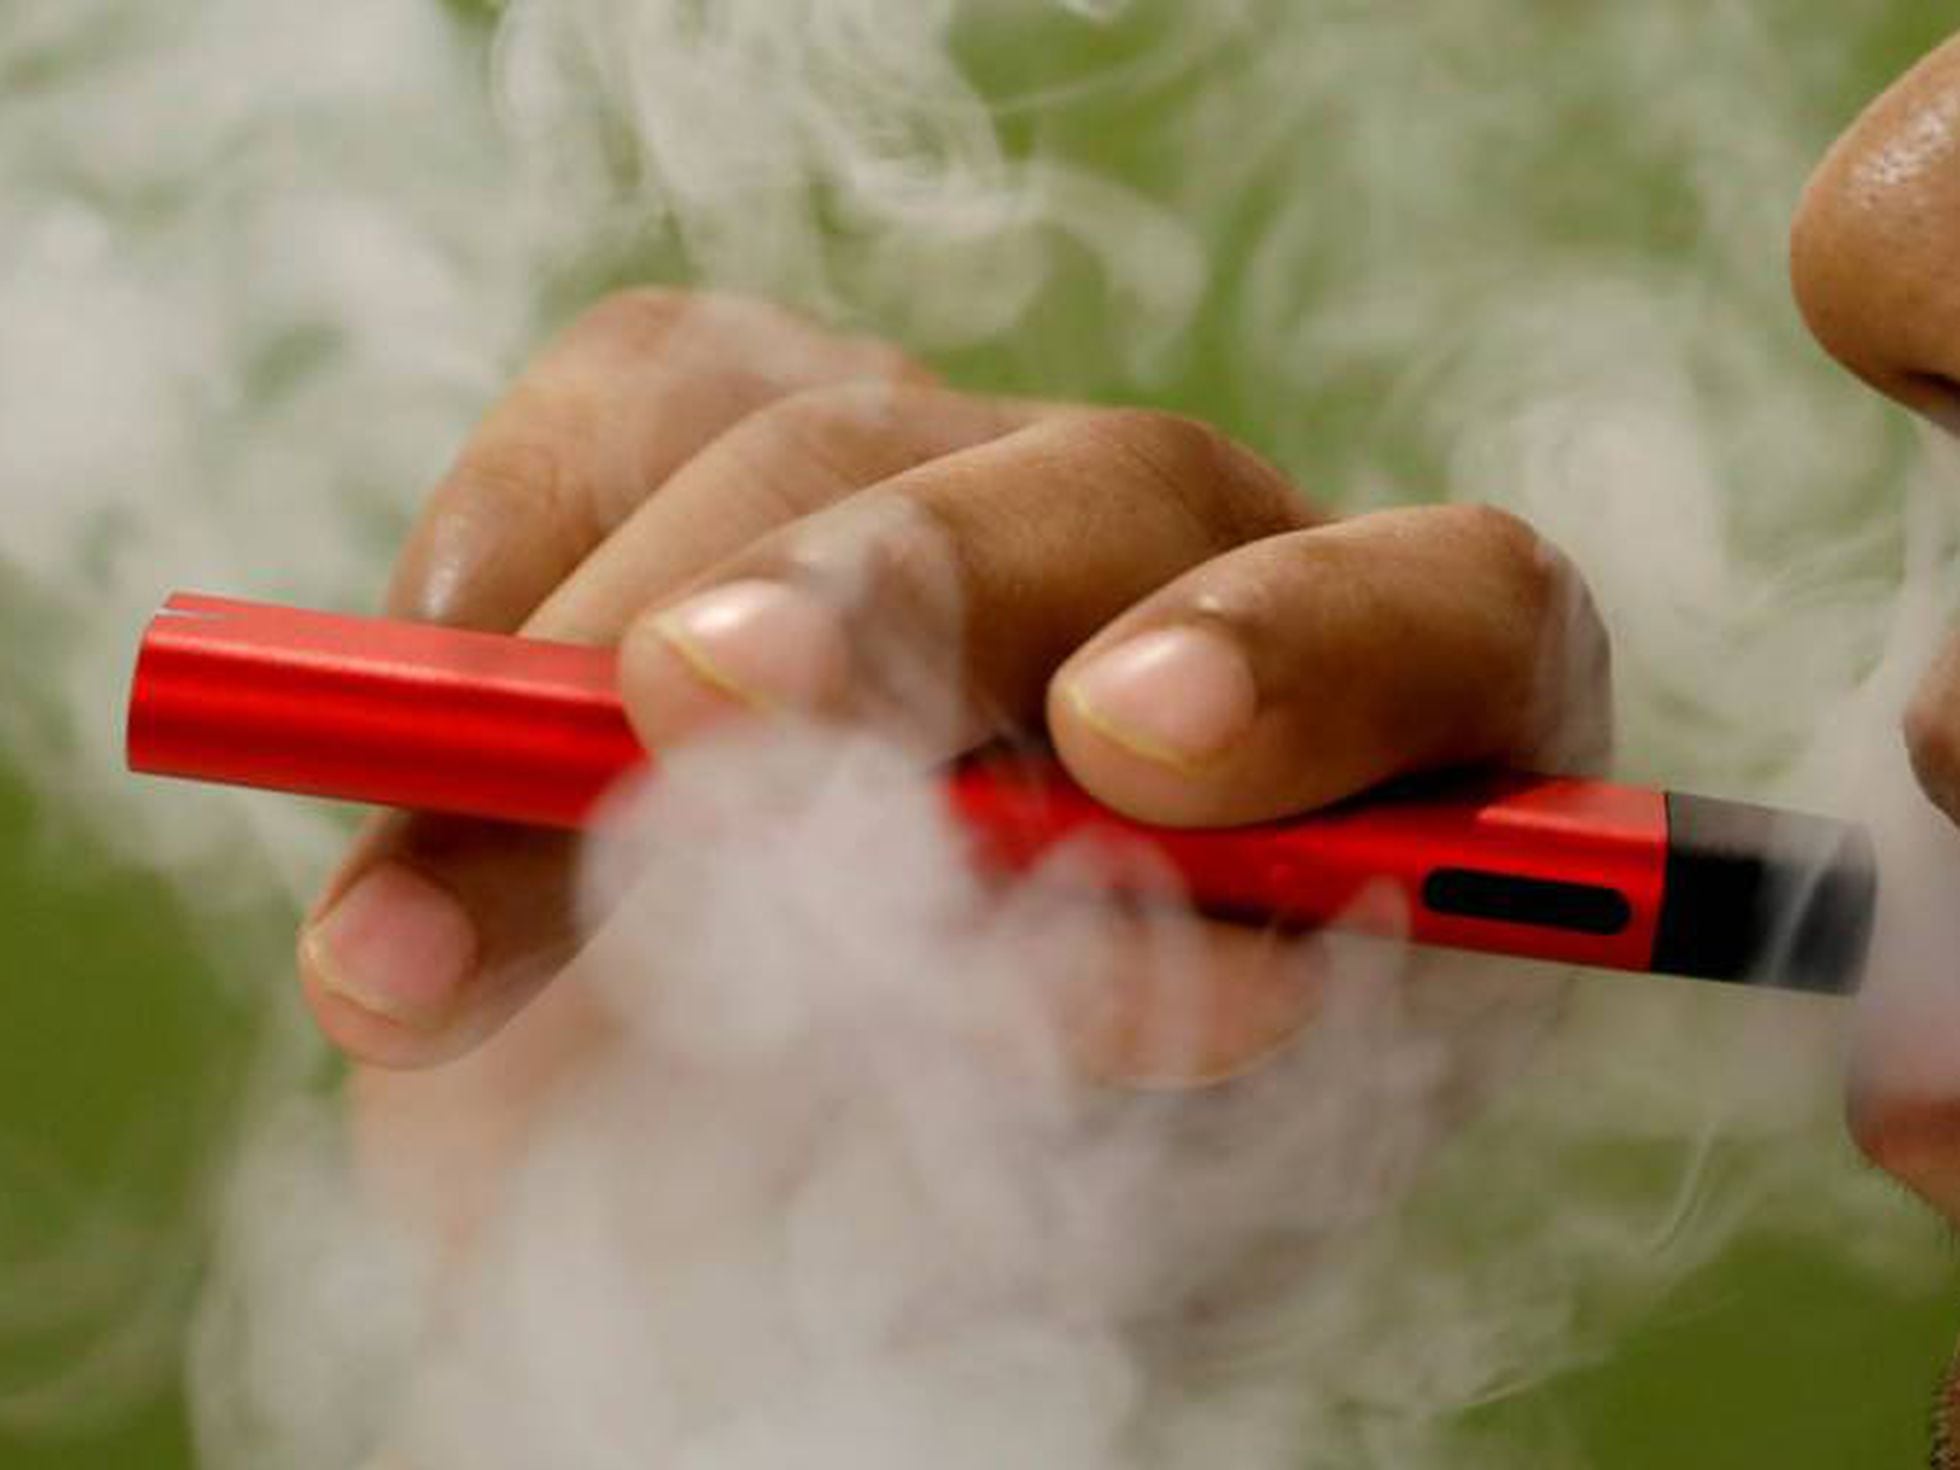 La OMS alerta de que los cigarrillos electrónicos son inseguros y el tabaco  por calentamiento puede causar cáncer | Economía nacional e internacional |  Cinco Días